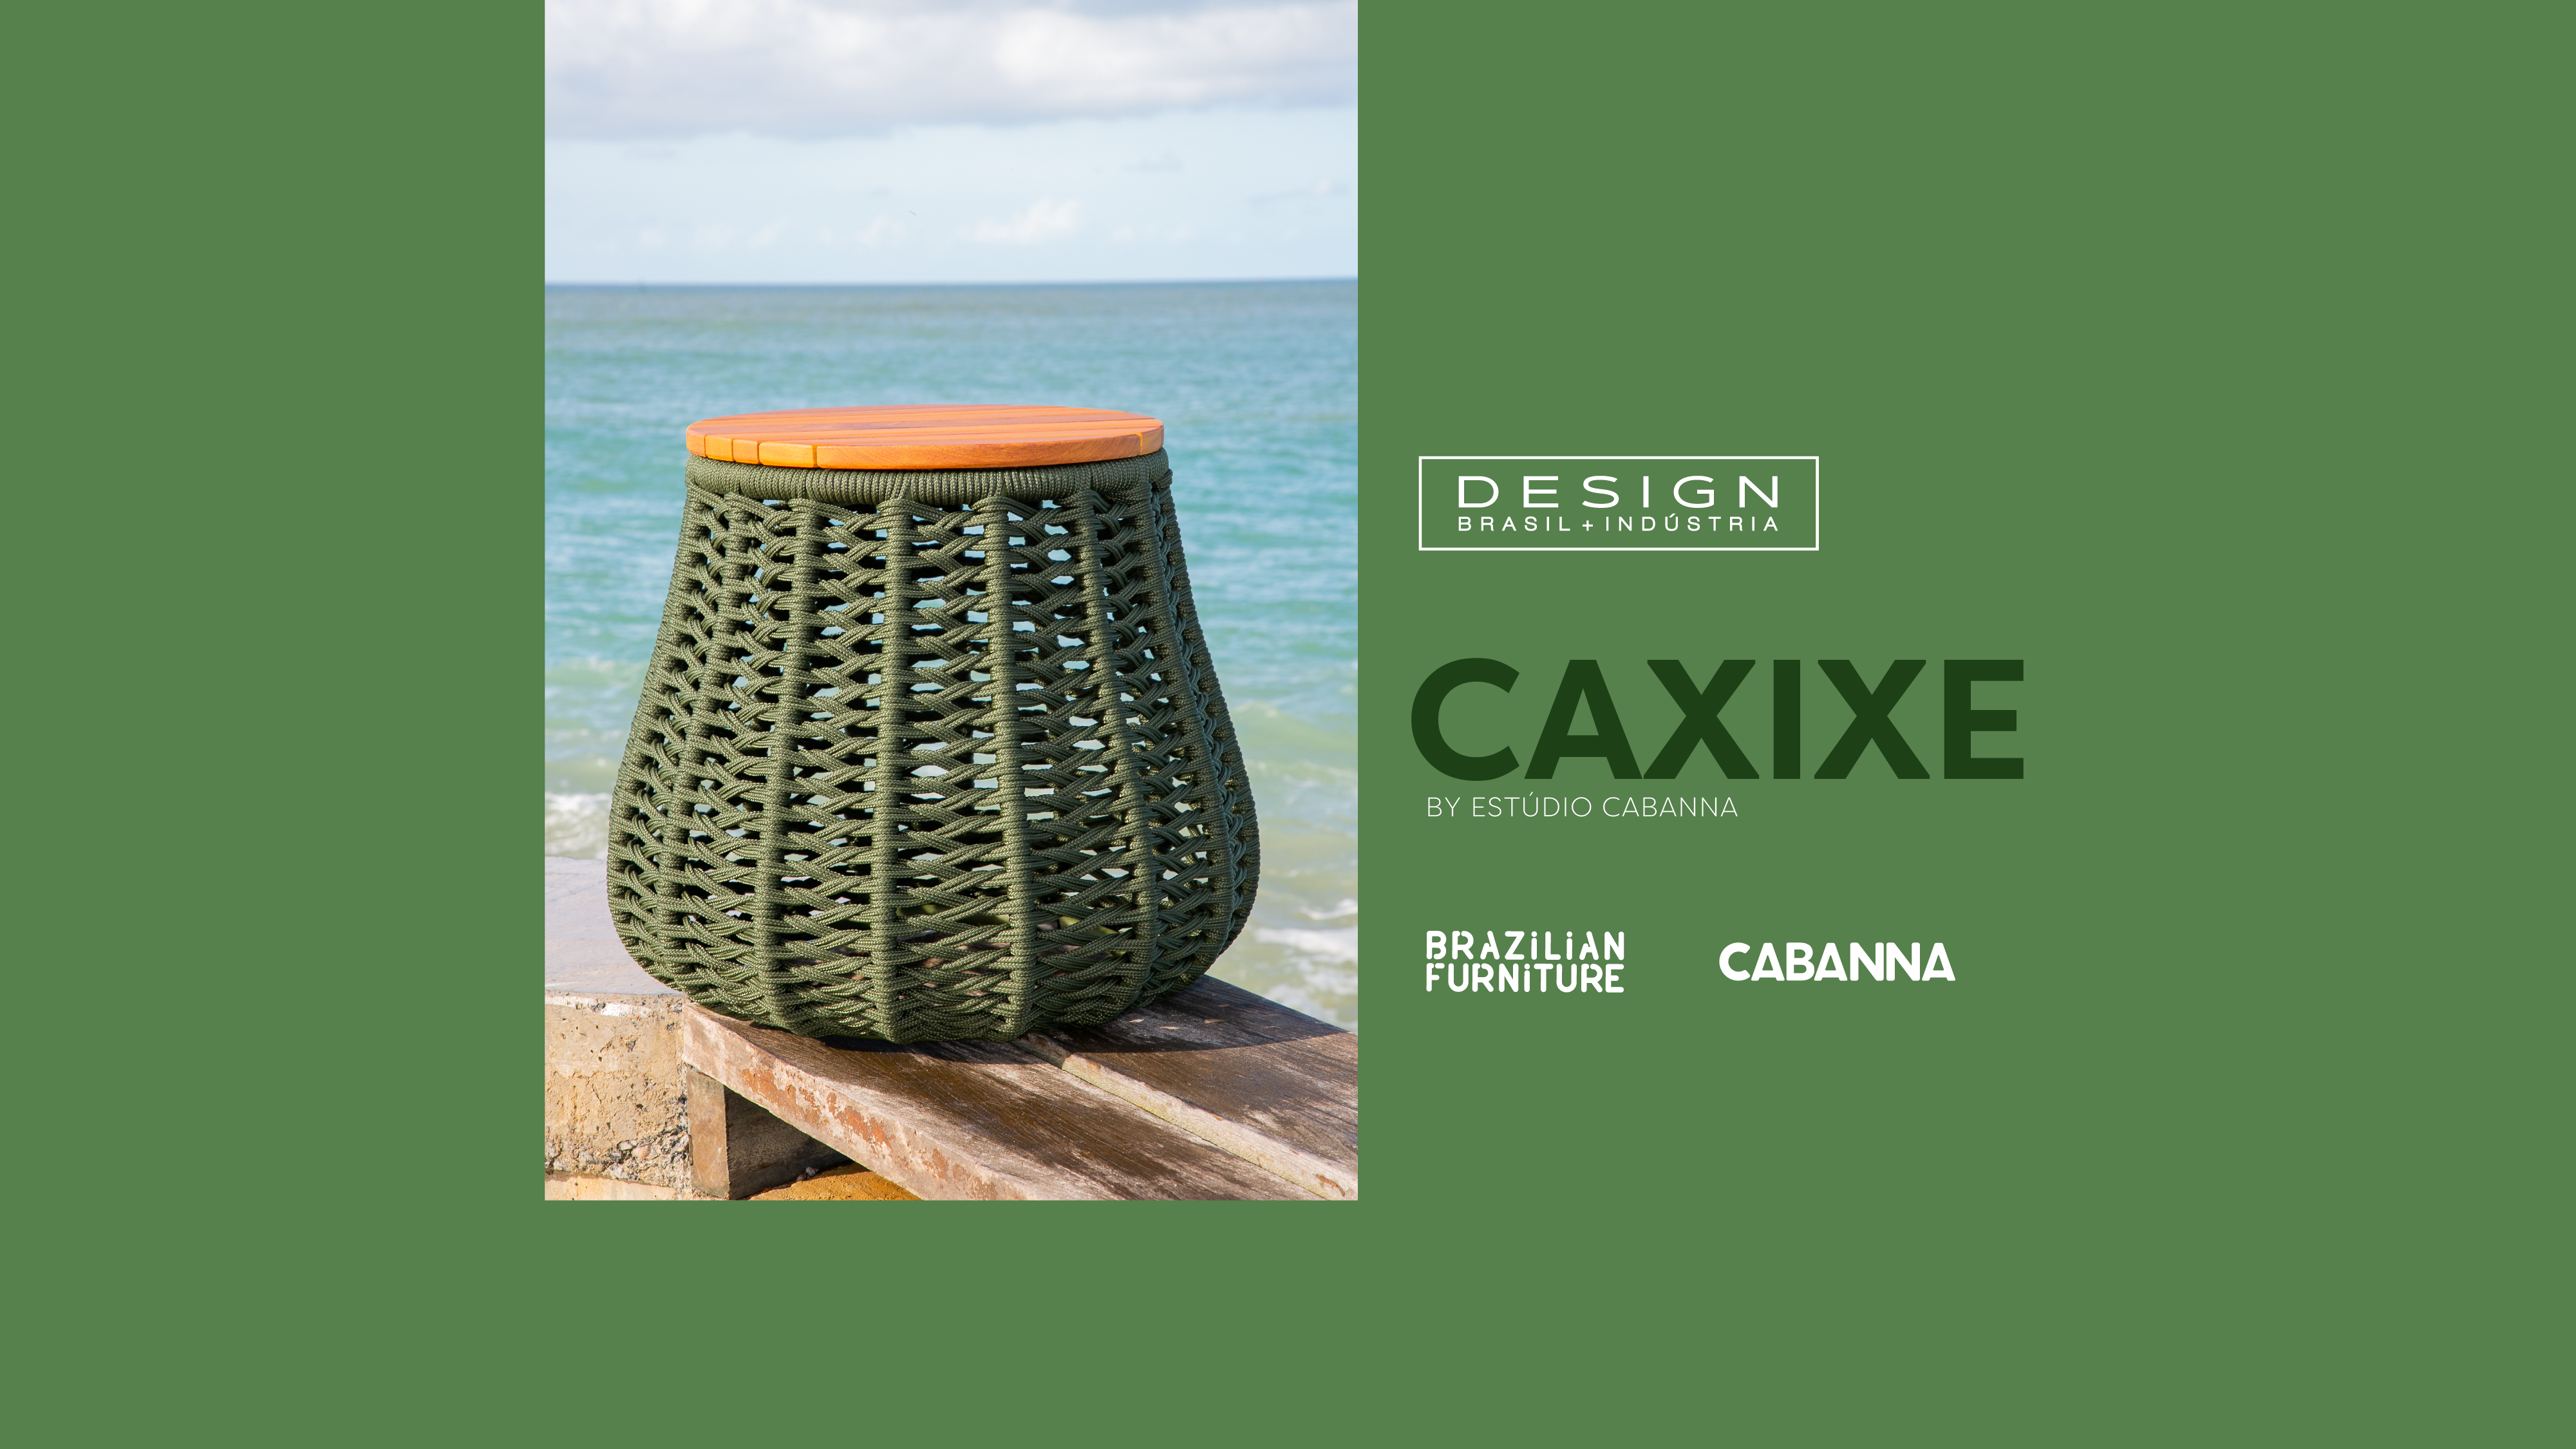 Estúdio Cabanna dá ritmo ao design brasileiro por meio do projeto Design Brasil + Indústria